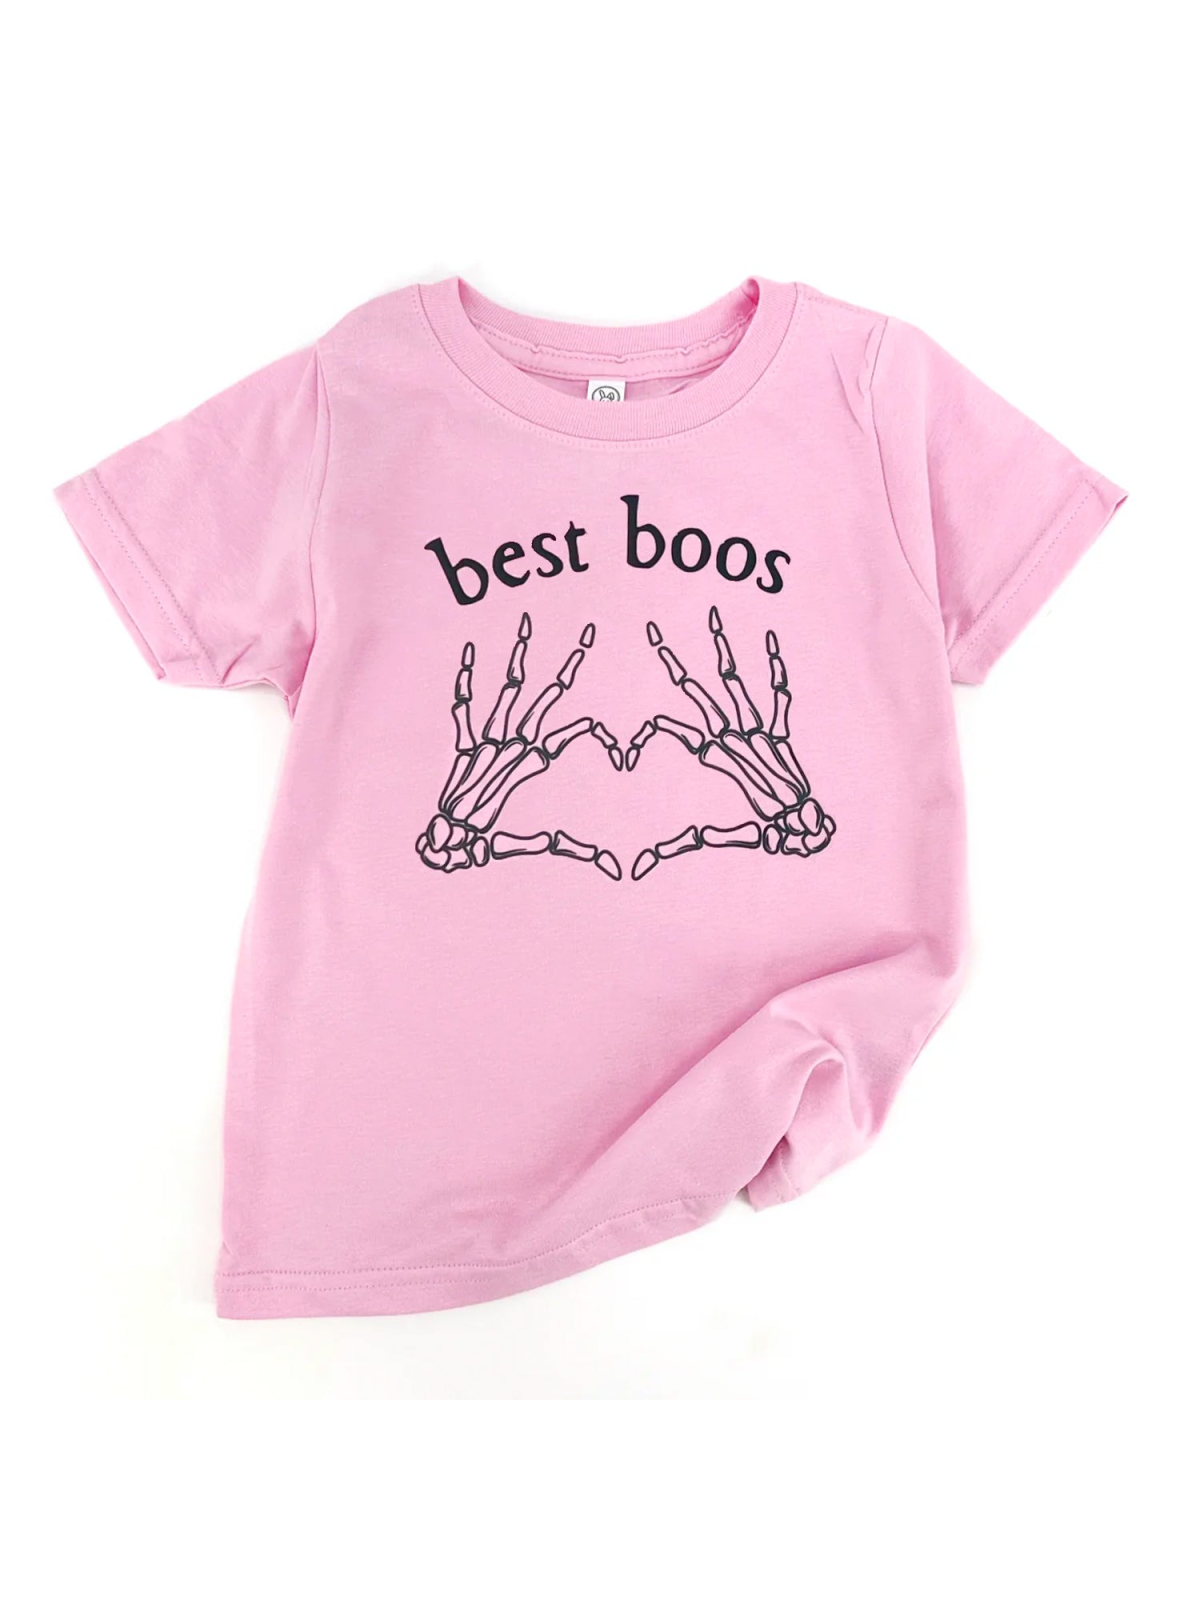 Best Boos Kids Tee, Pink